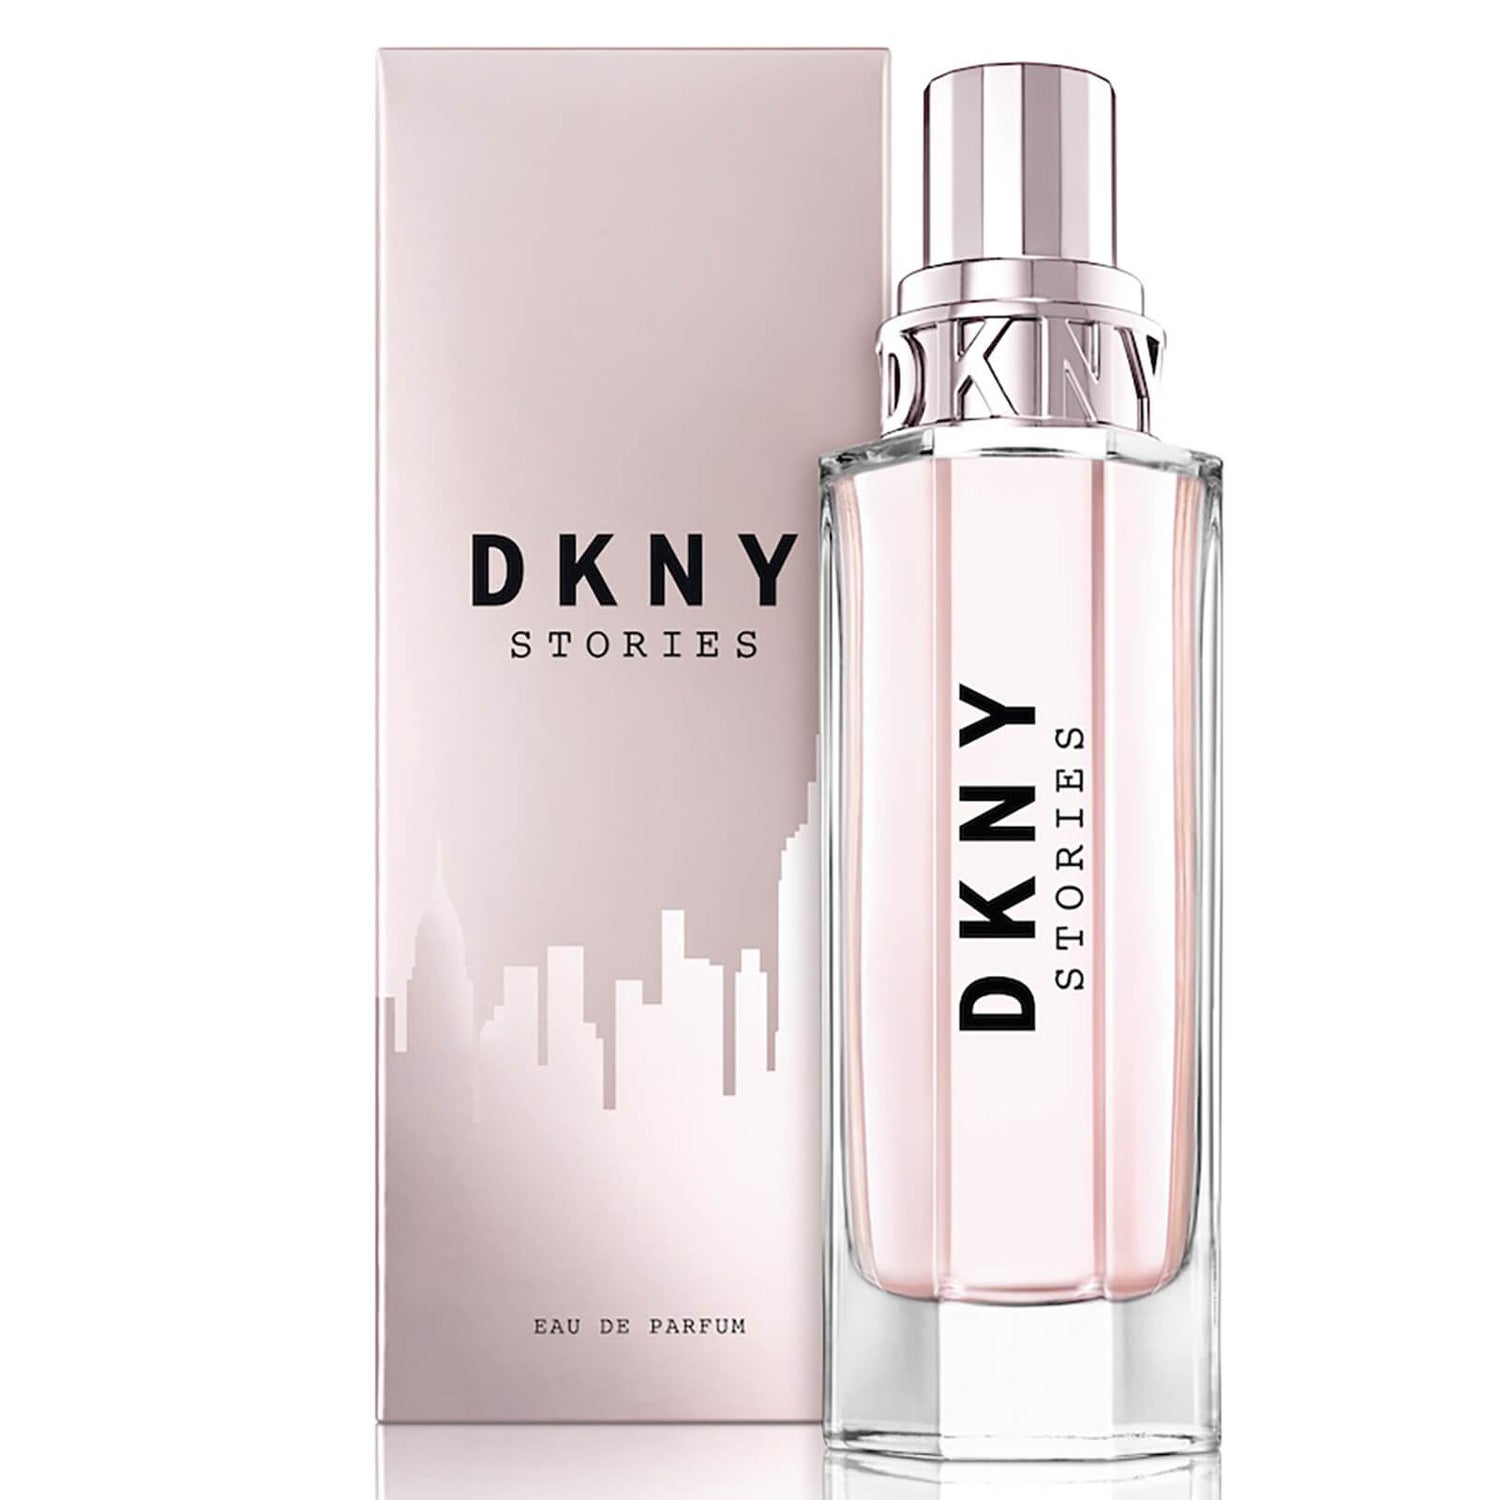 DKNY Stories Eau de Parfum 100ml